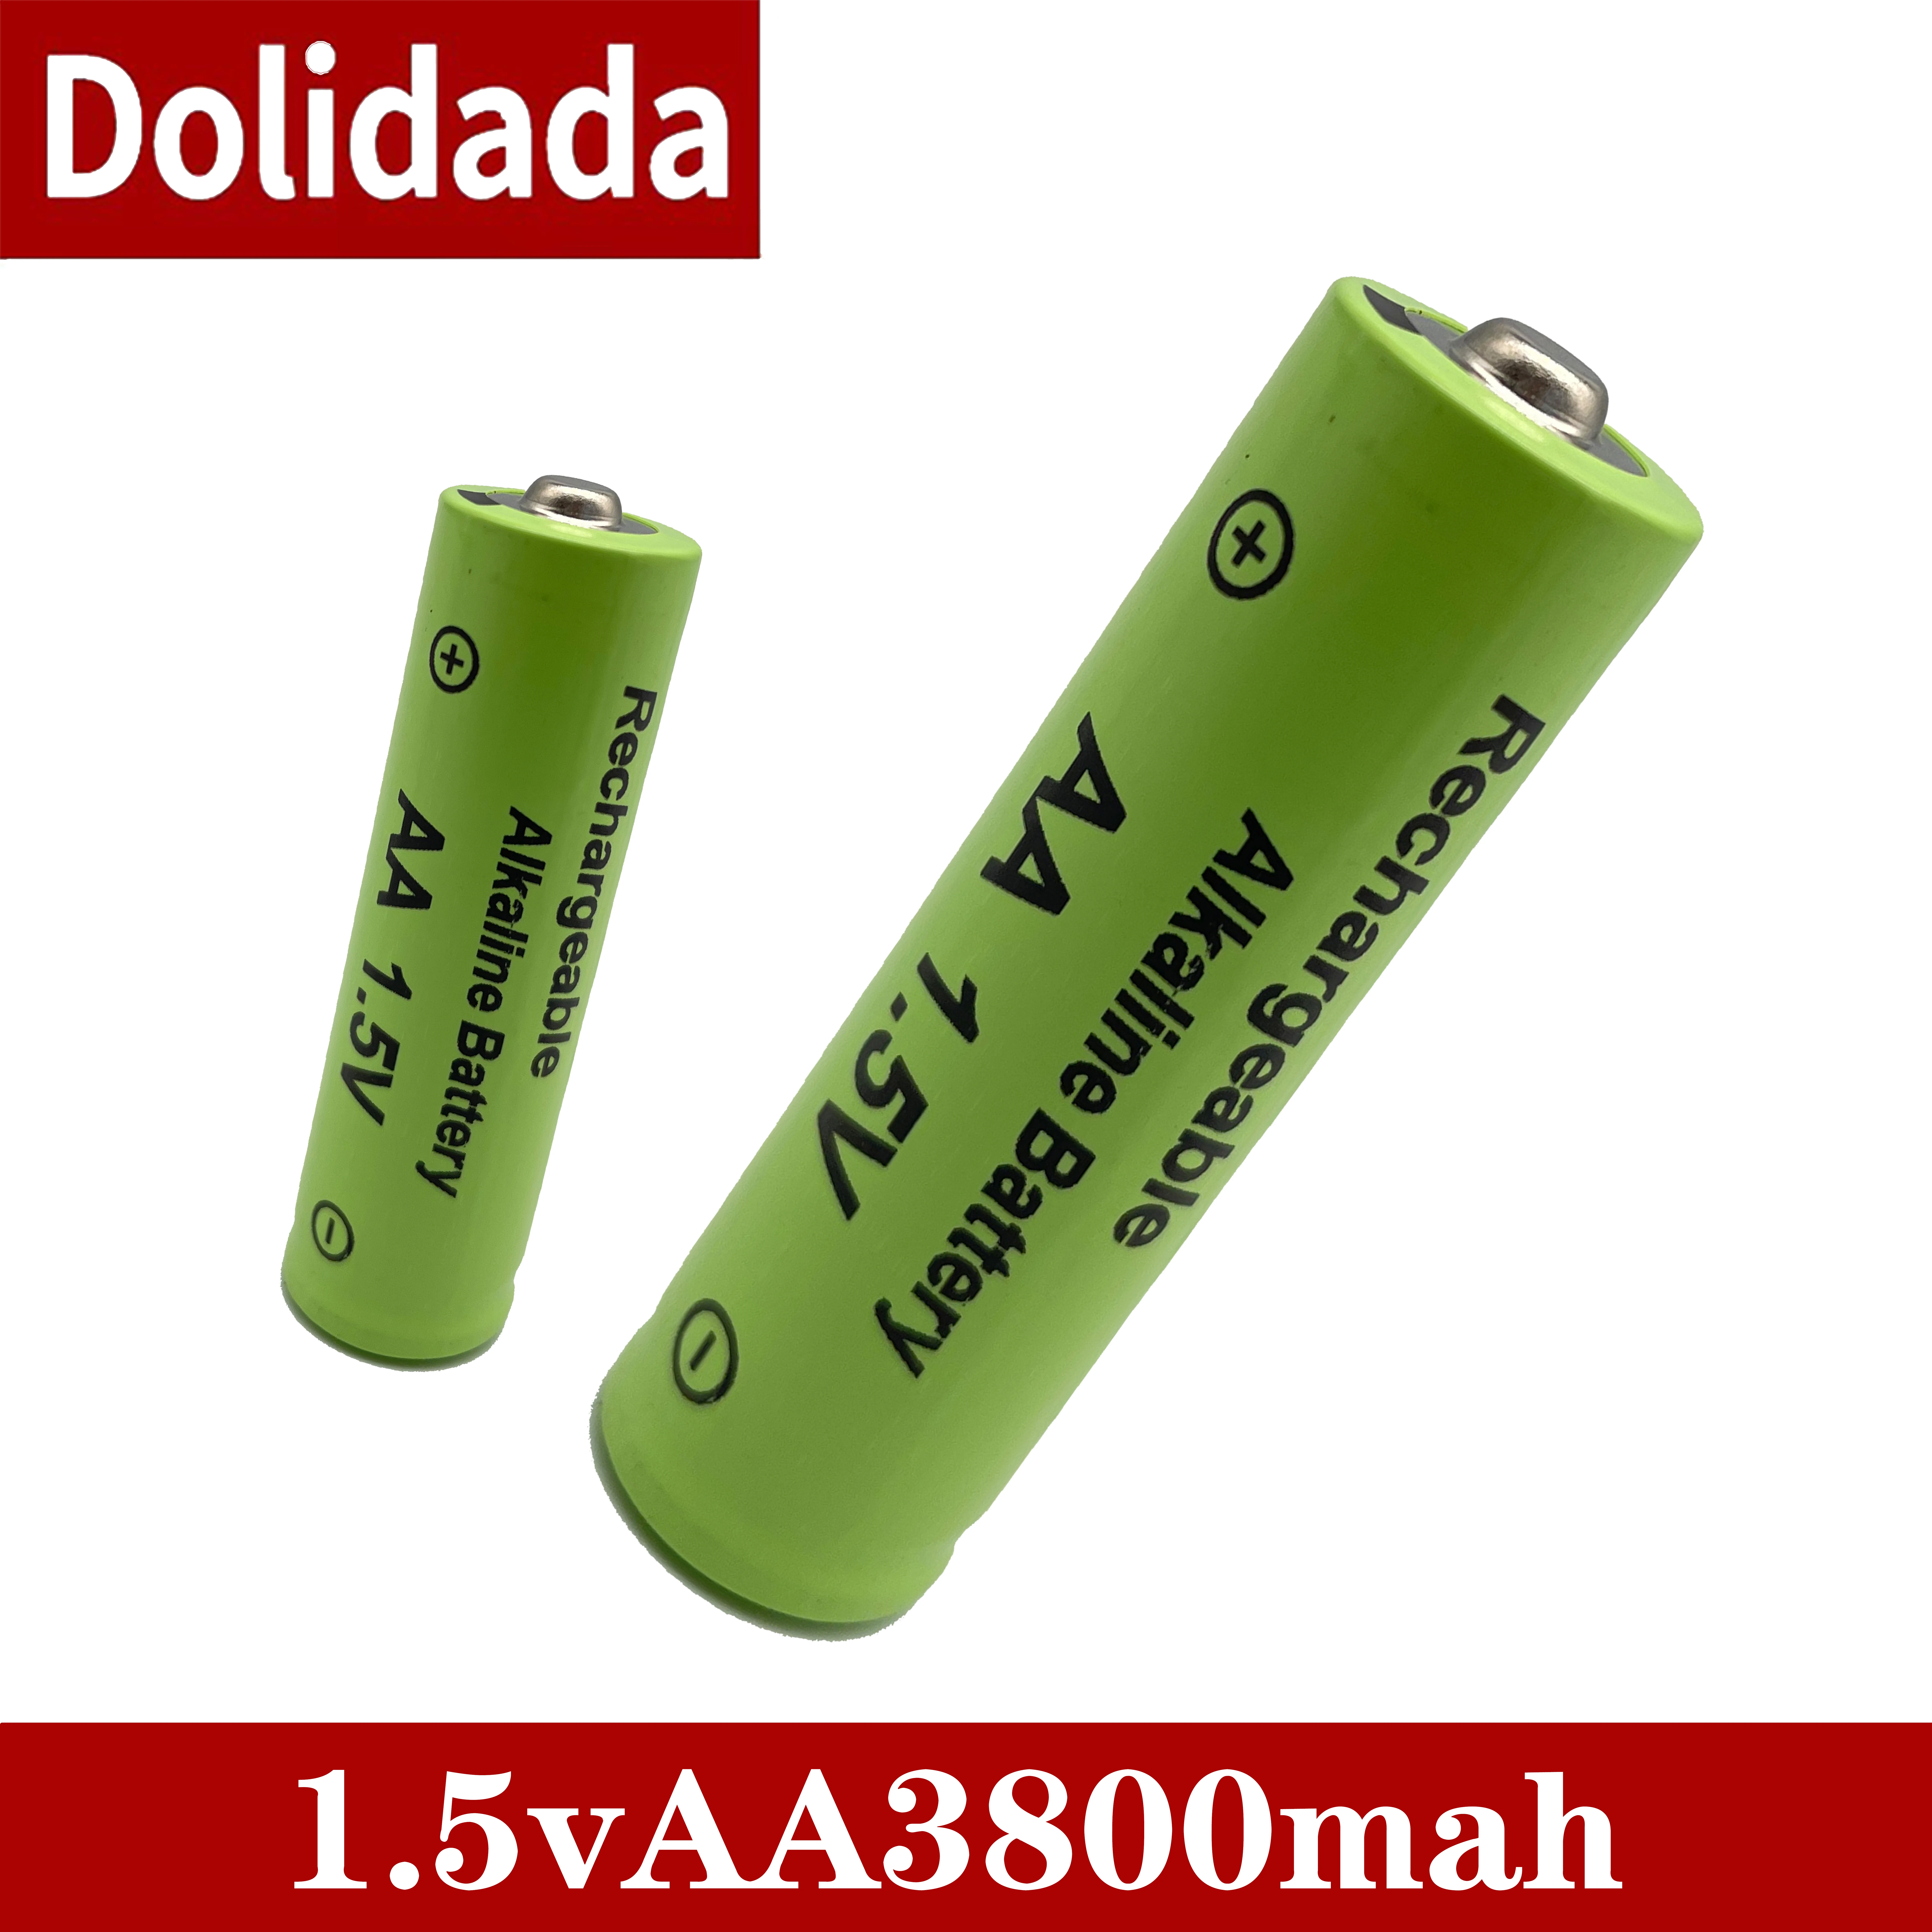 AA nuevo AA recargable de la batería de 1,5 V AA alcalinas 3800mah para la antorcha de los juguetes reloj reproductor de MP3 reemplazar la batería Ni-Mh 4